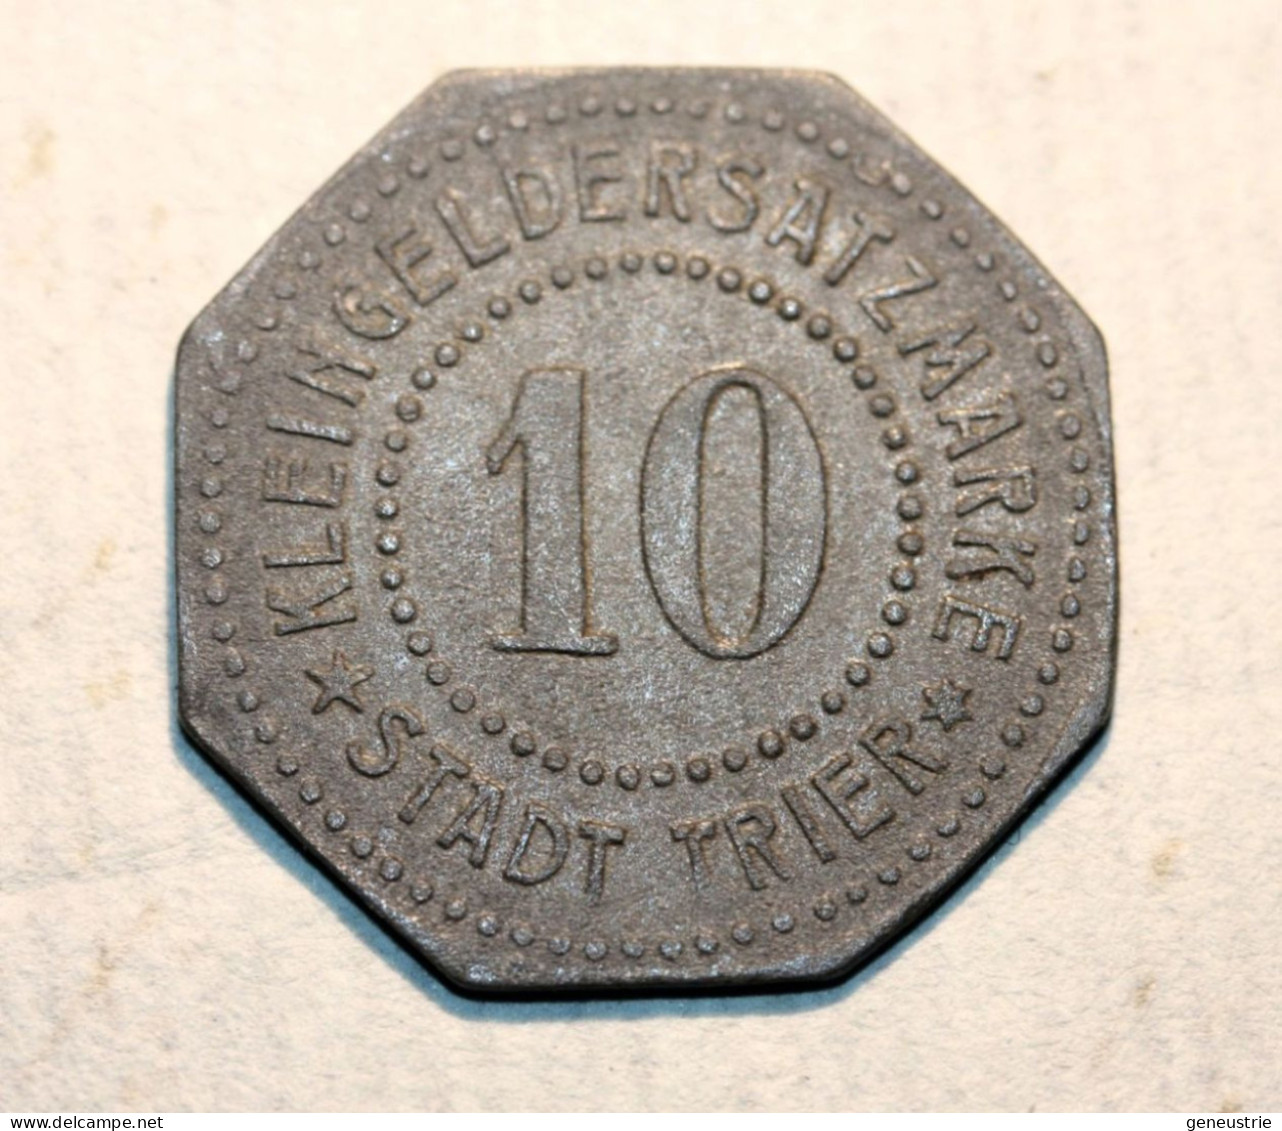 WWI Monnaie Jeton De Necessité De La Ville De Trêves "10 Stadt Trier" German Emergency Token WW1 - Monétaires/De Nécessité